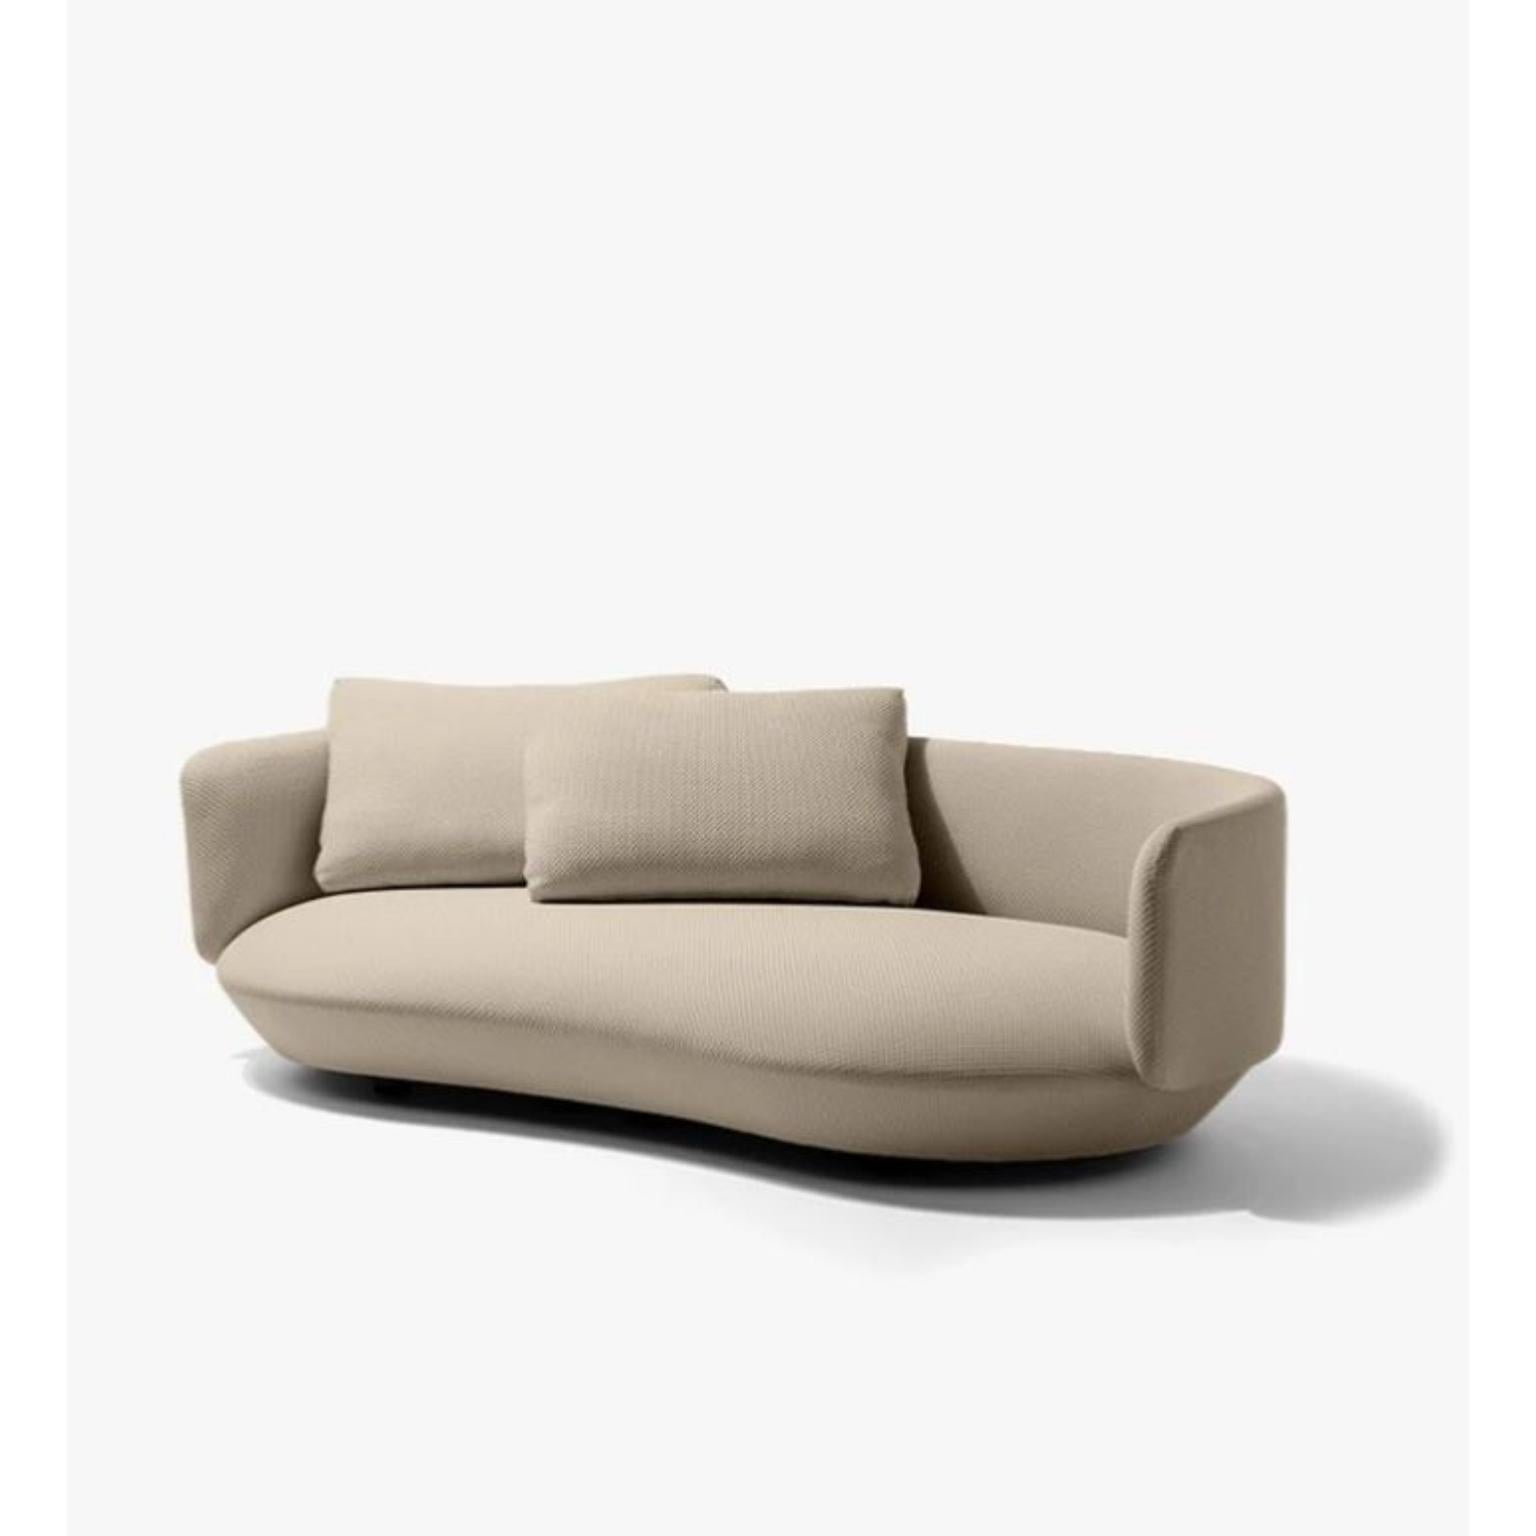 Brazilian Medium Baixo Sofa by Wentz For Sale